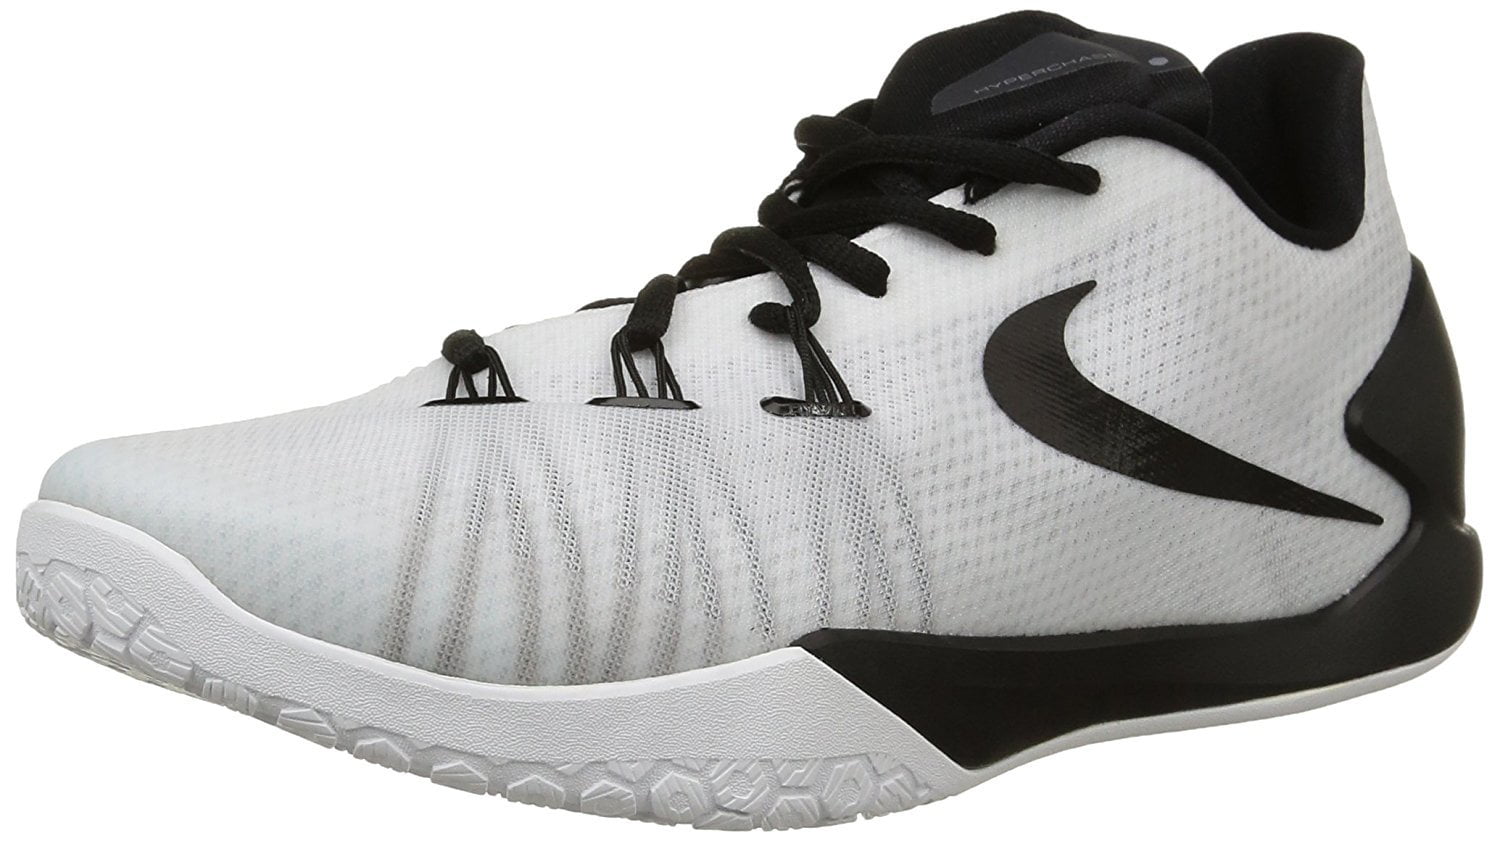 Nike HyperChase Men's Basketball Shoes - Walmart.com